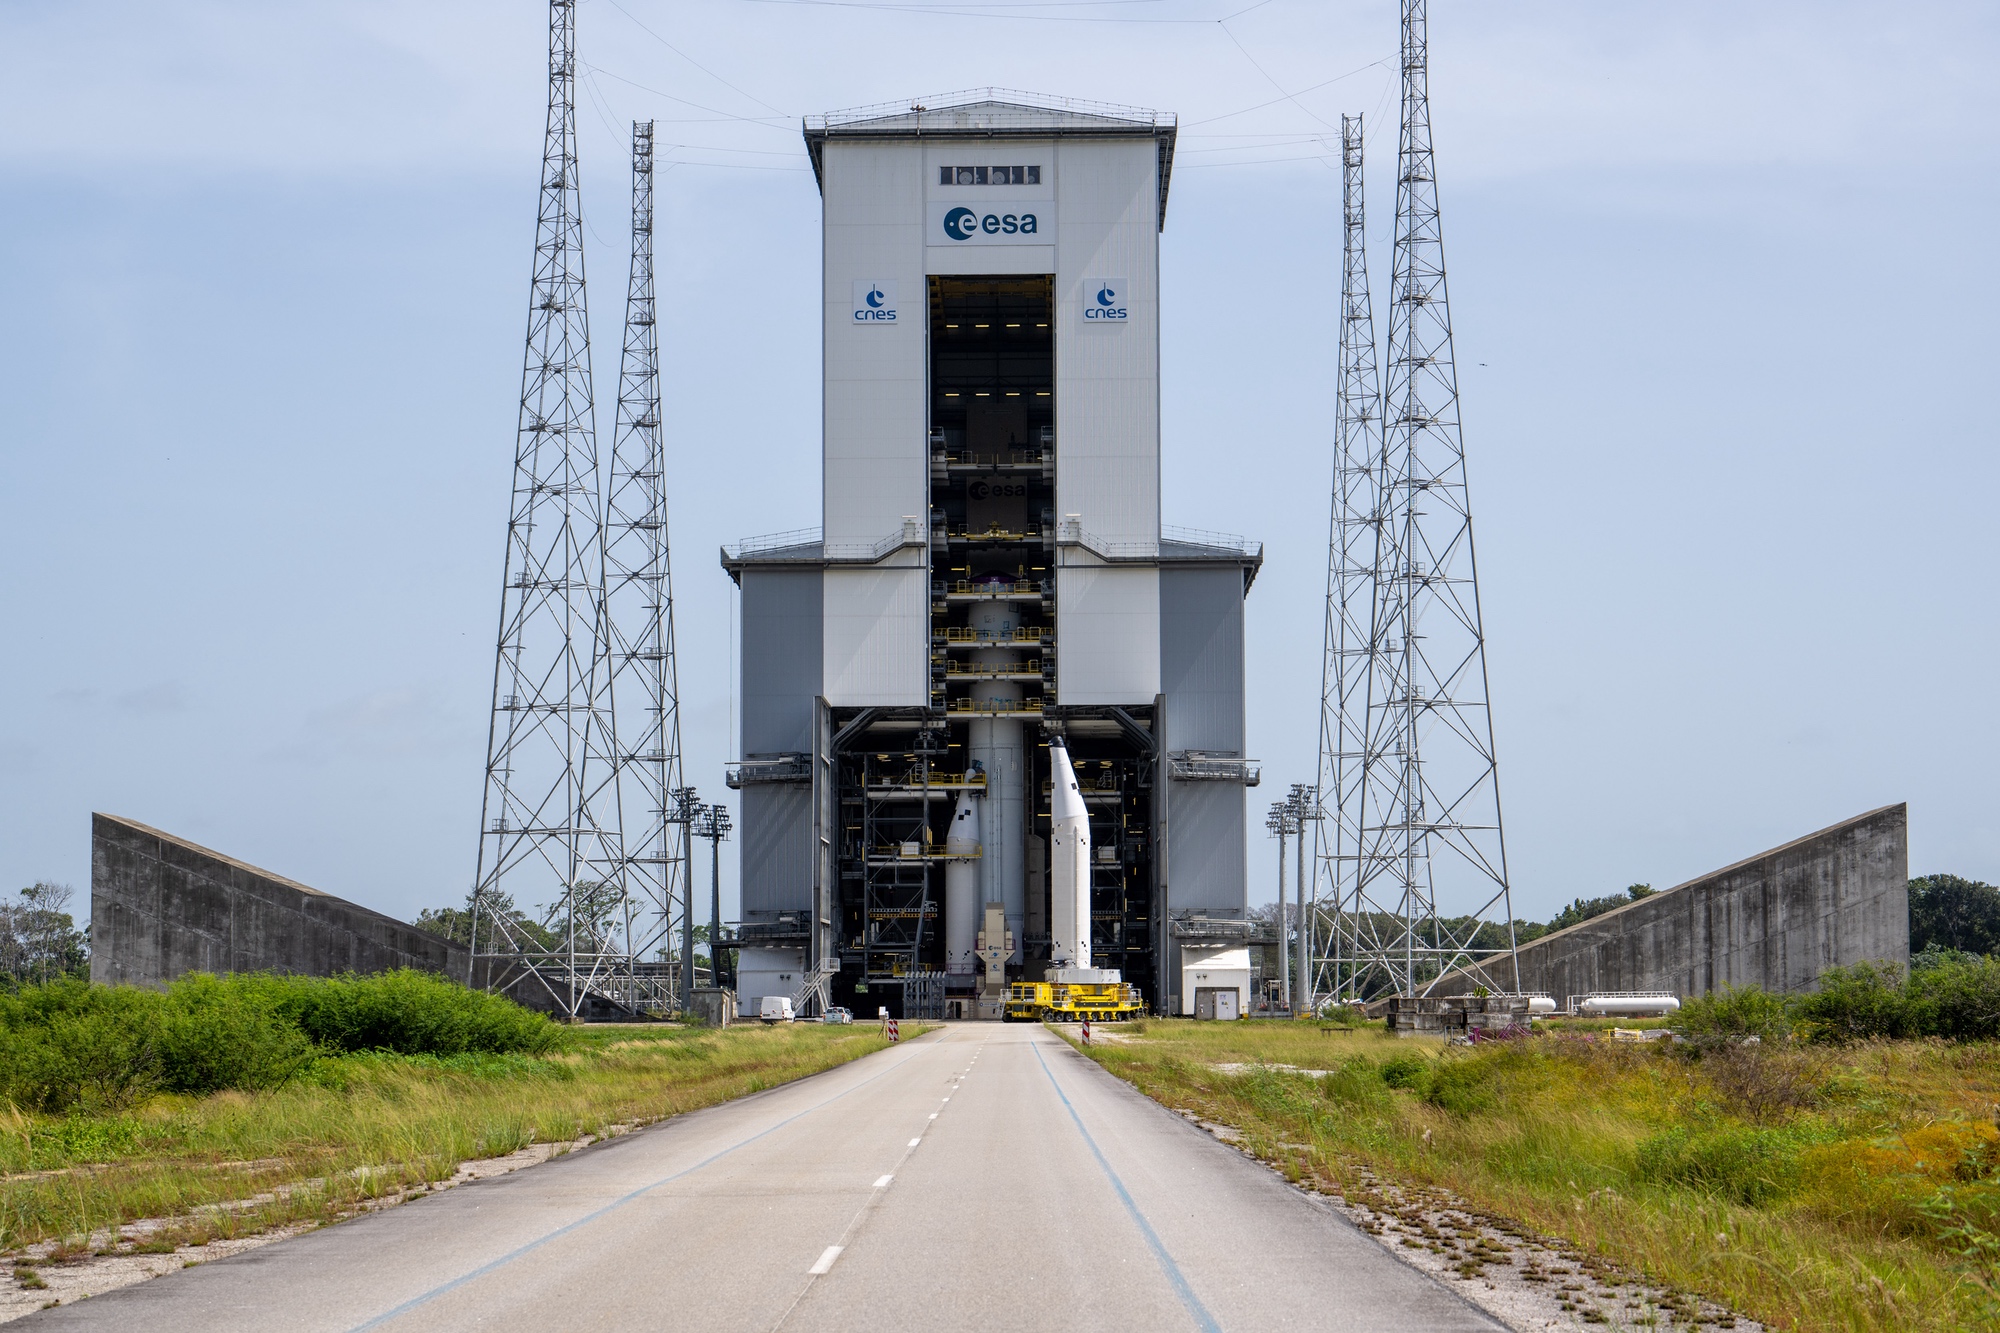 El lanzamiento inaugural del Ariane 6 está previsto para la primera quincena de julio